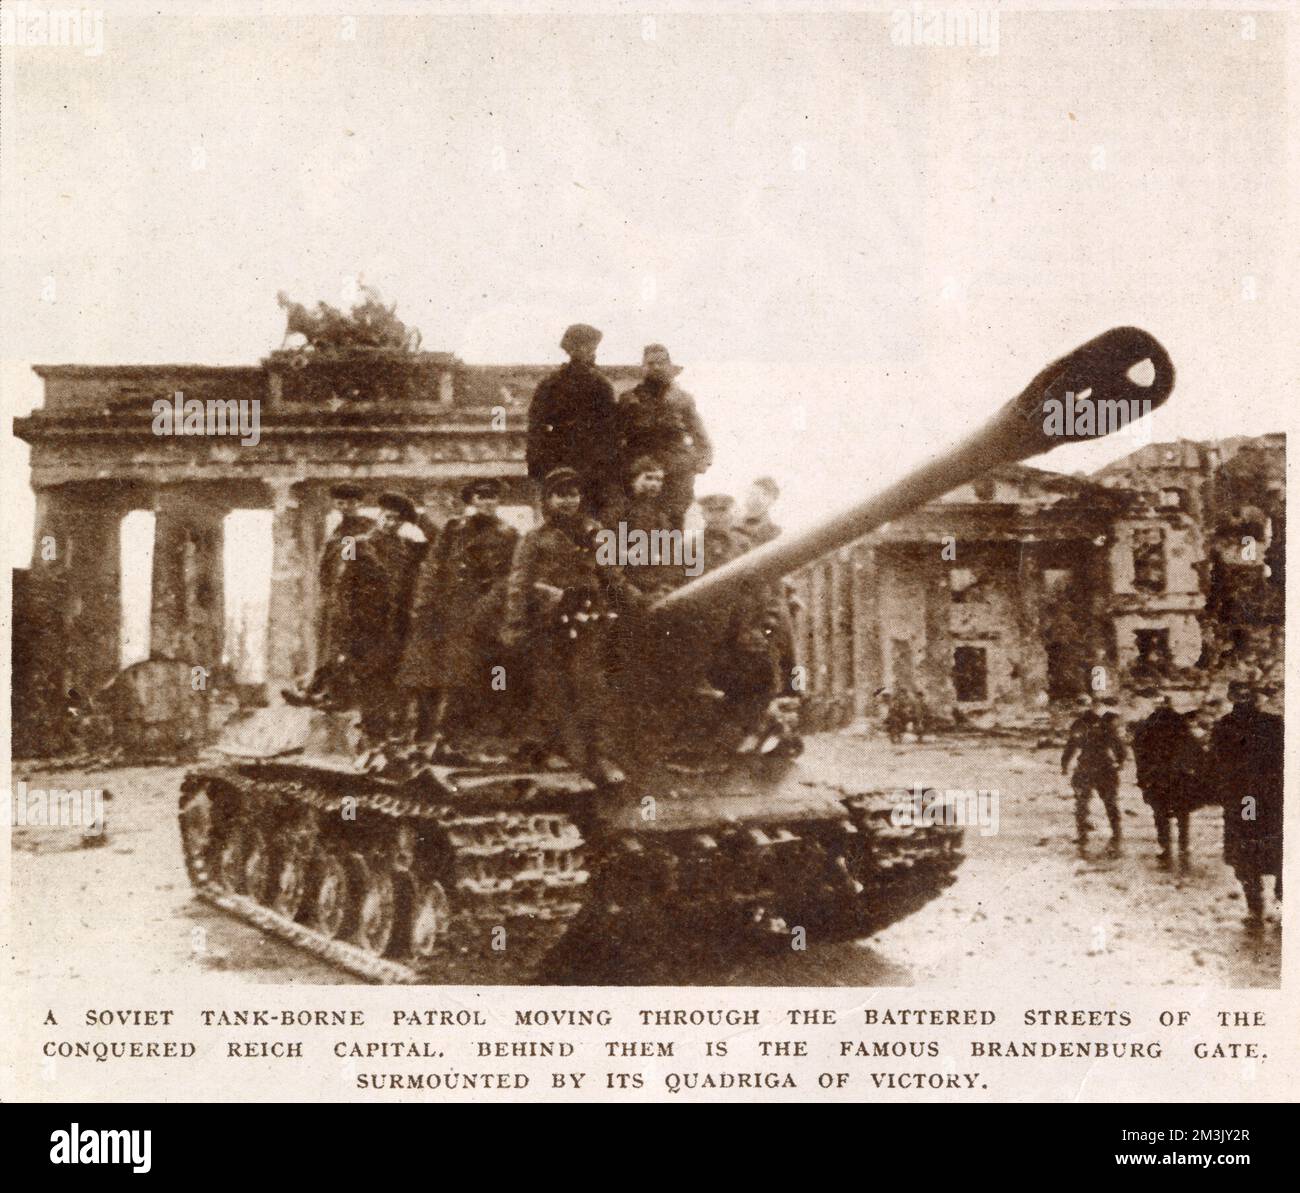 Ein sowjetischer Panzer, der sich durch Berlin bewegt, mit dem Brandenburger Tor im Hintergrund, Mai 1945. Berlin fiel am 2. Mai 1945 nach einer Schlacht, die 17 Tage dauerte, an die russische Armee. Angesichts des Verhaltens der Männer, die auf dem Panzer reiten, ist es sicher anzunehmen, dass dieses Foto nach der deutschen Kapitulation aufgenommen wurde. Stockfoto